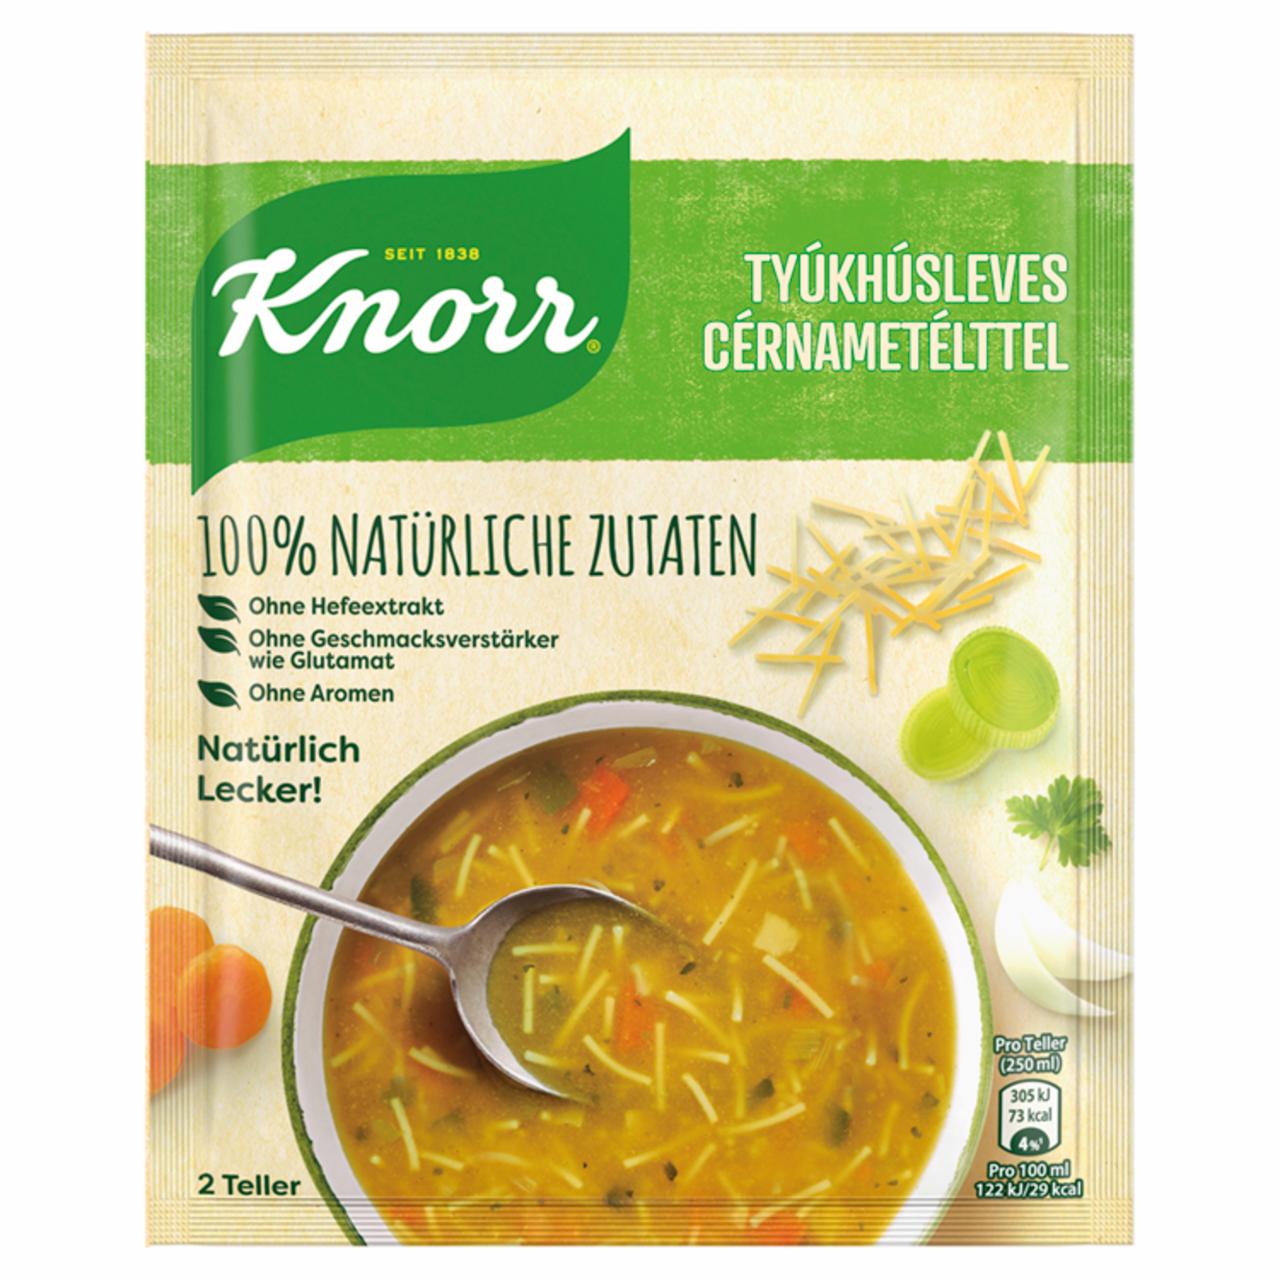 Képek - Knorr tyúkhúsleves cérnametélttel 41 g